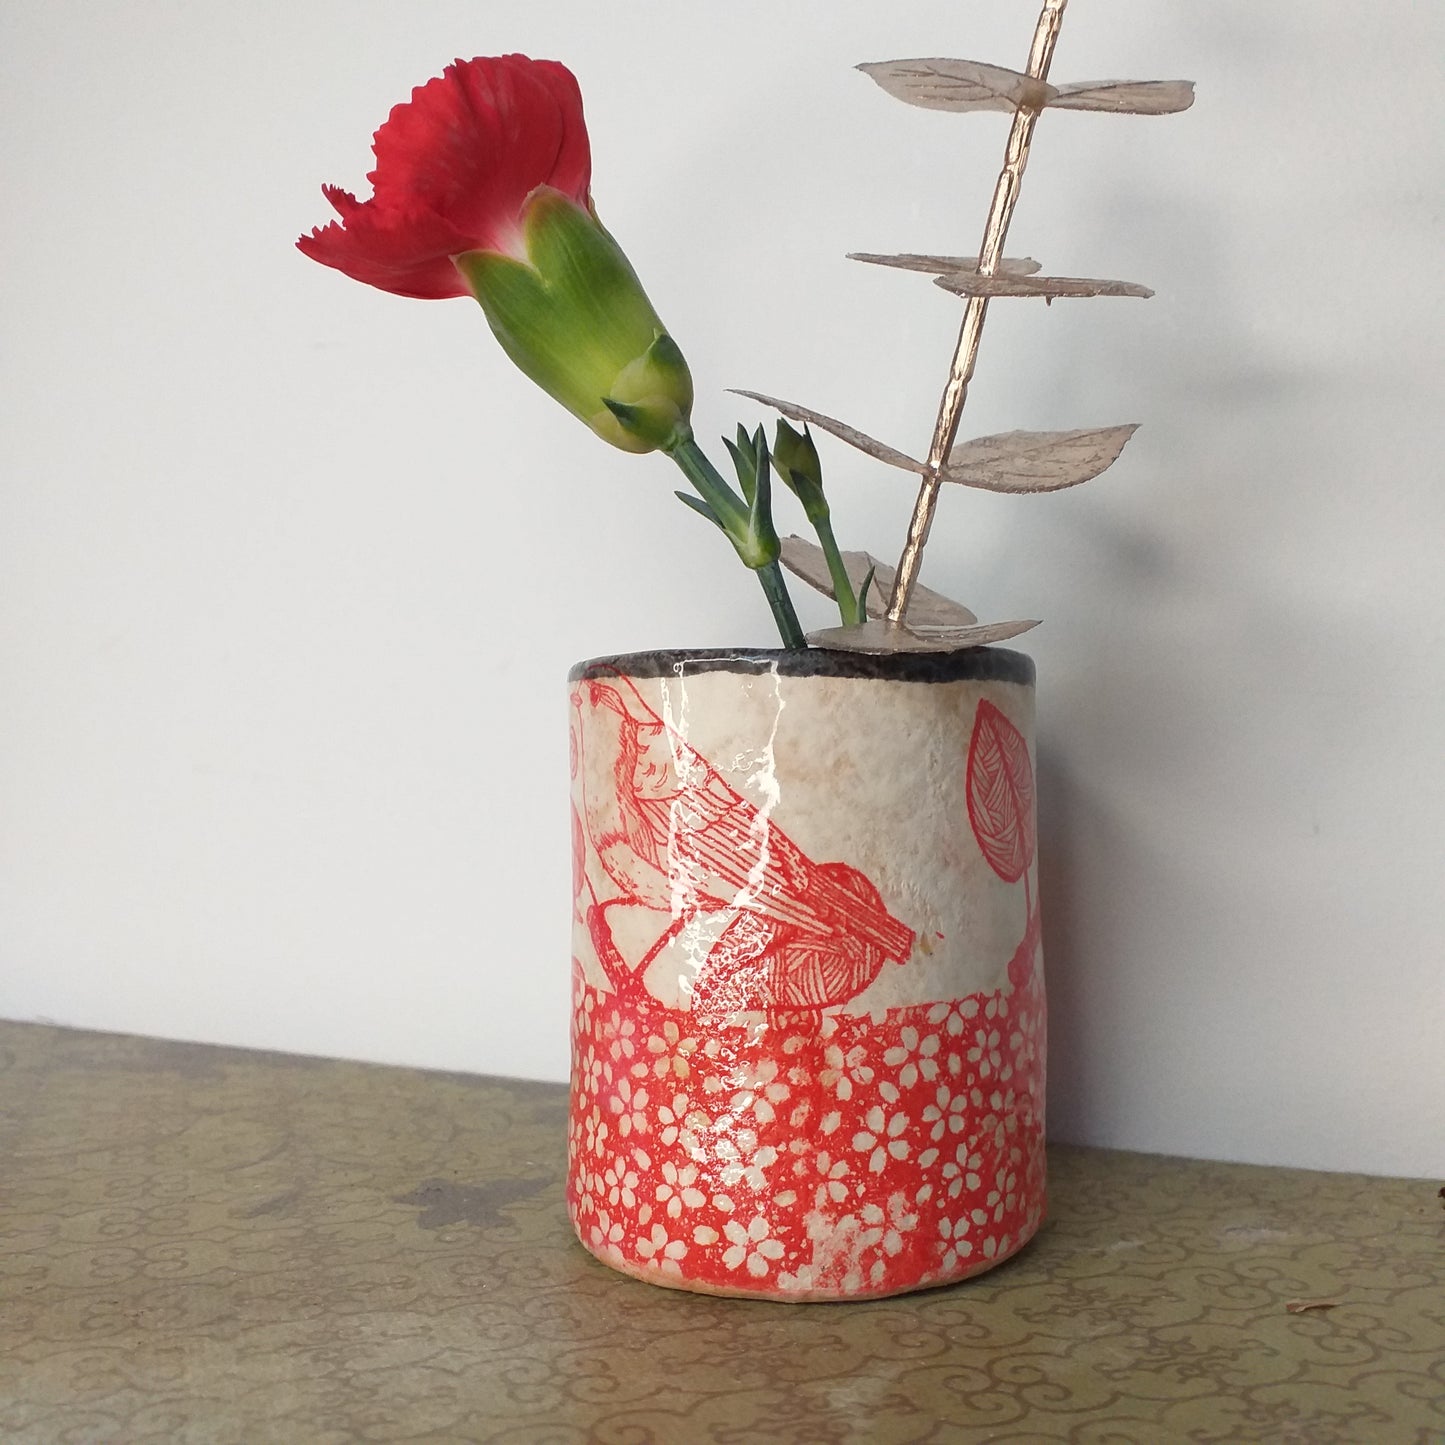 Little flower vase